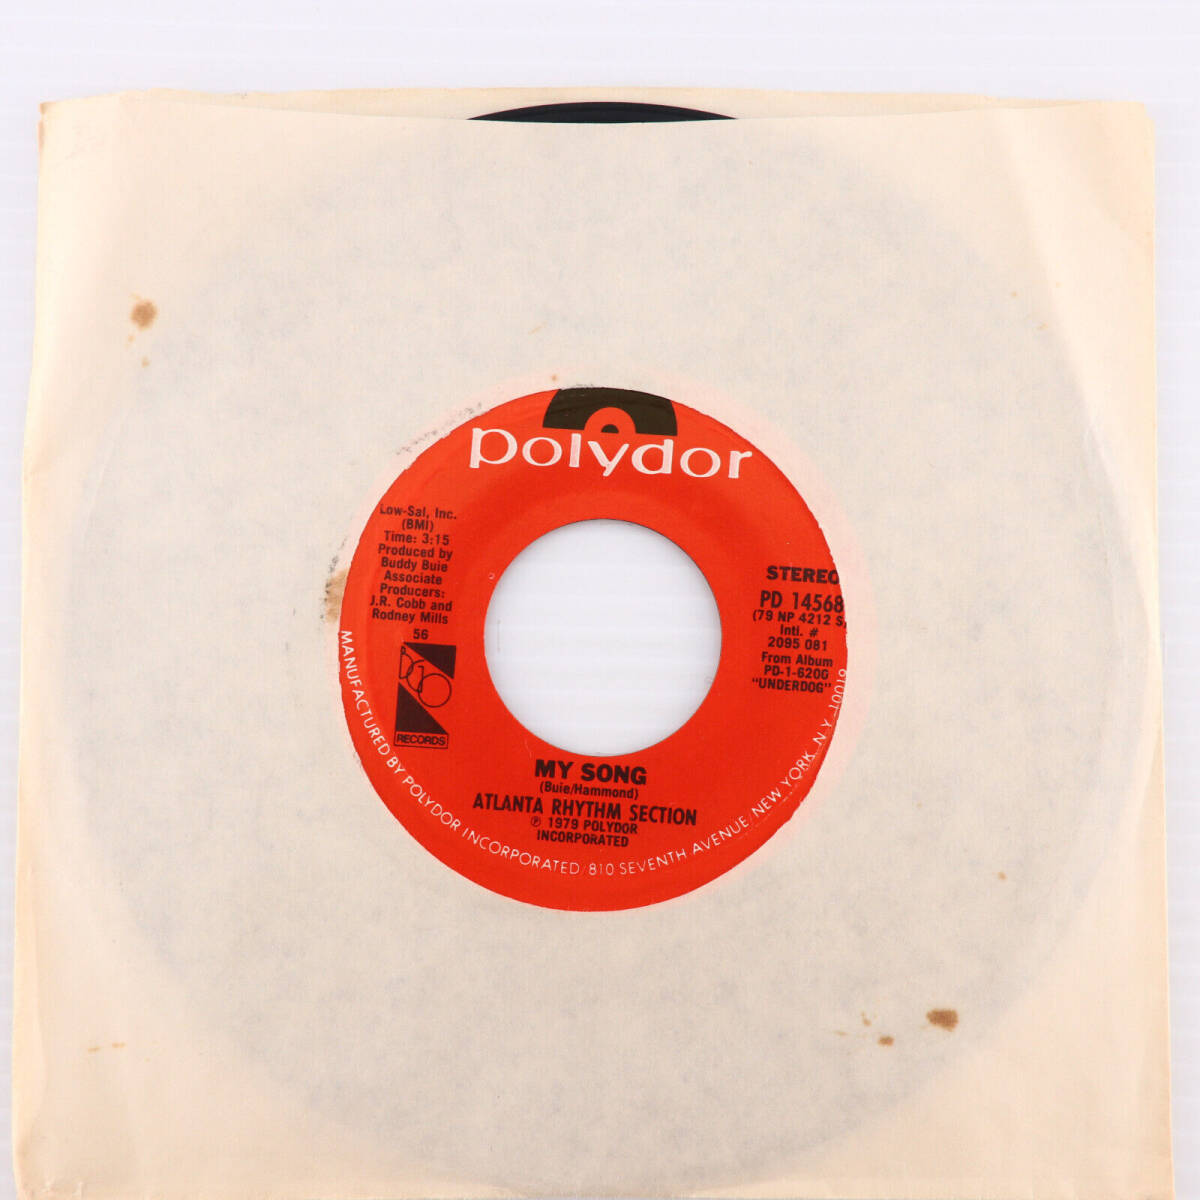 Atlanta Rhythm Section Do It Or Die / My Song - 1979 45 rpm 7" Single PD 14568 海外 即決_Atlanta Rhythm Sec 7